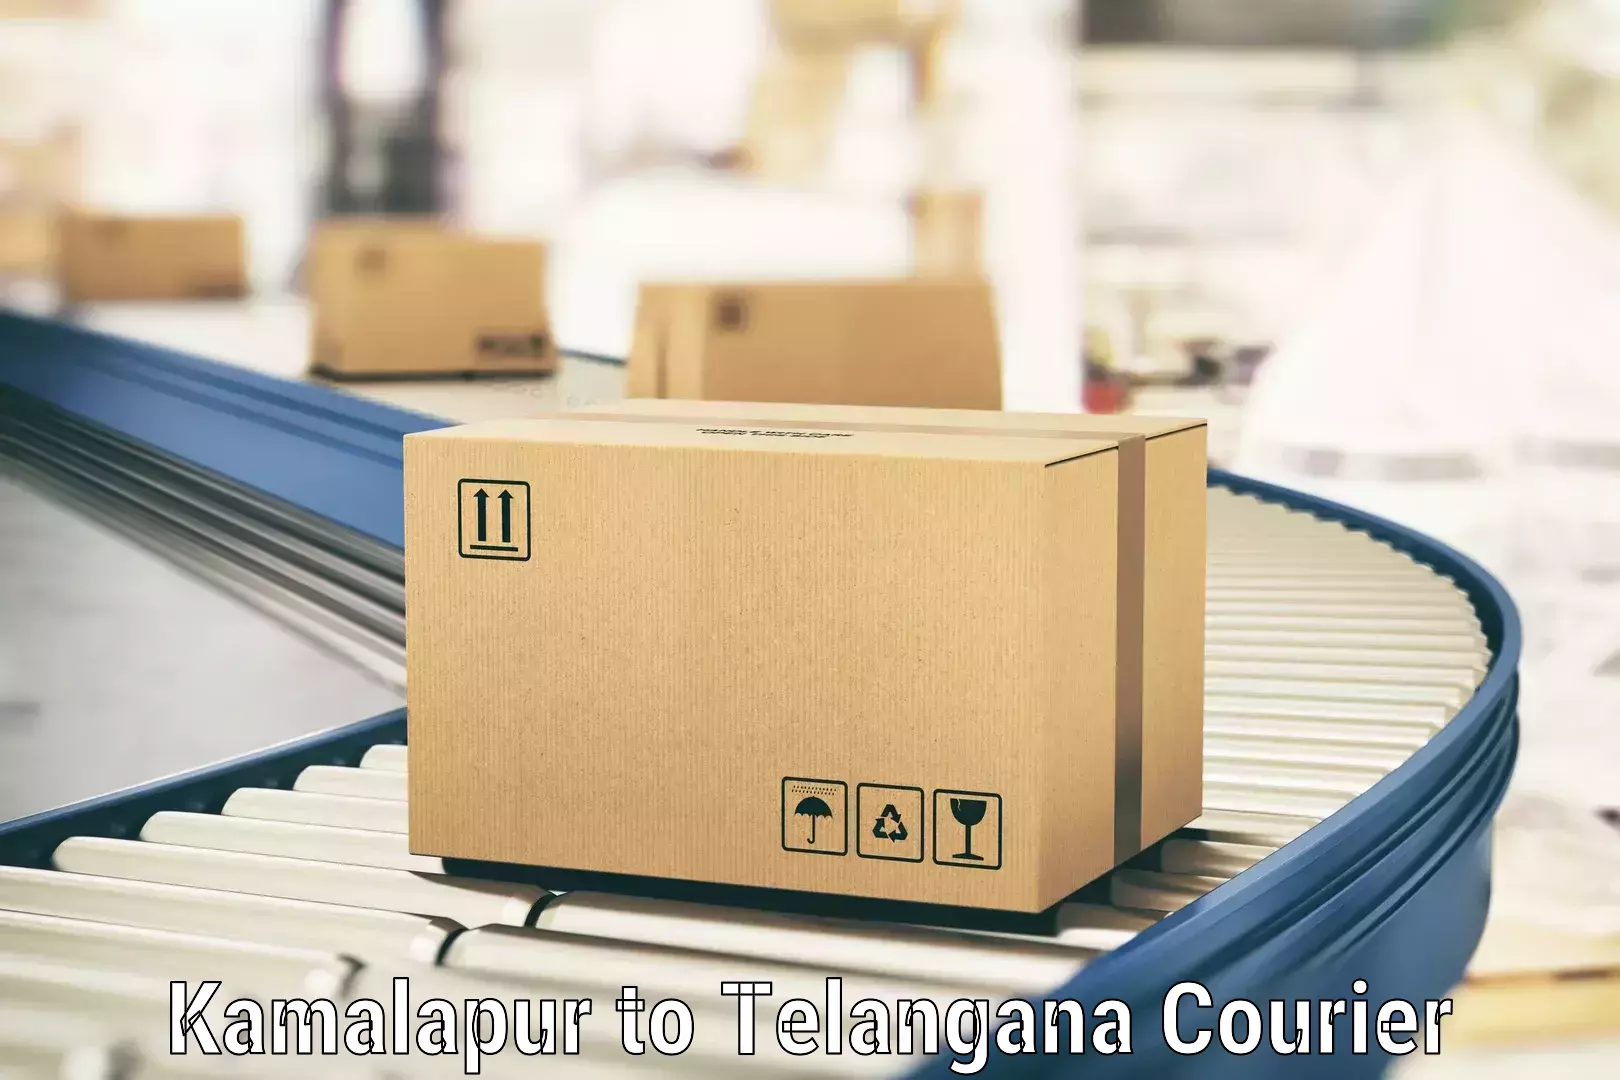 Supply chain delivery Kamalapur to Jammikunta